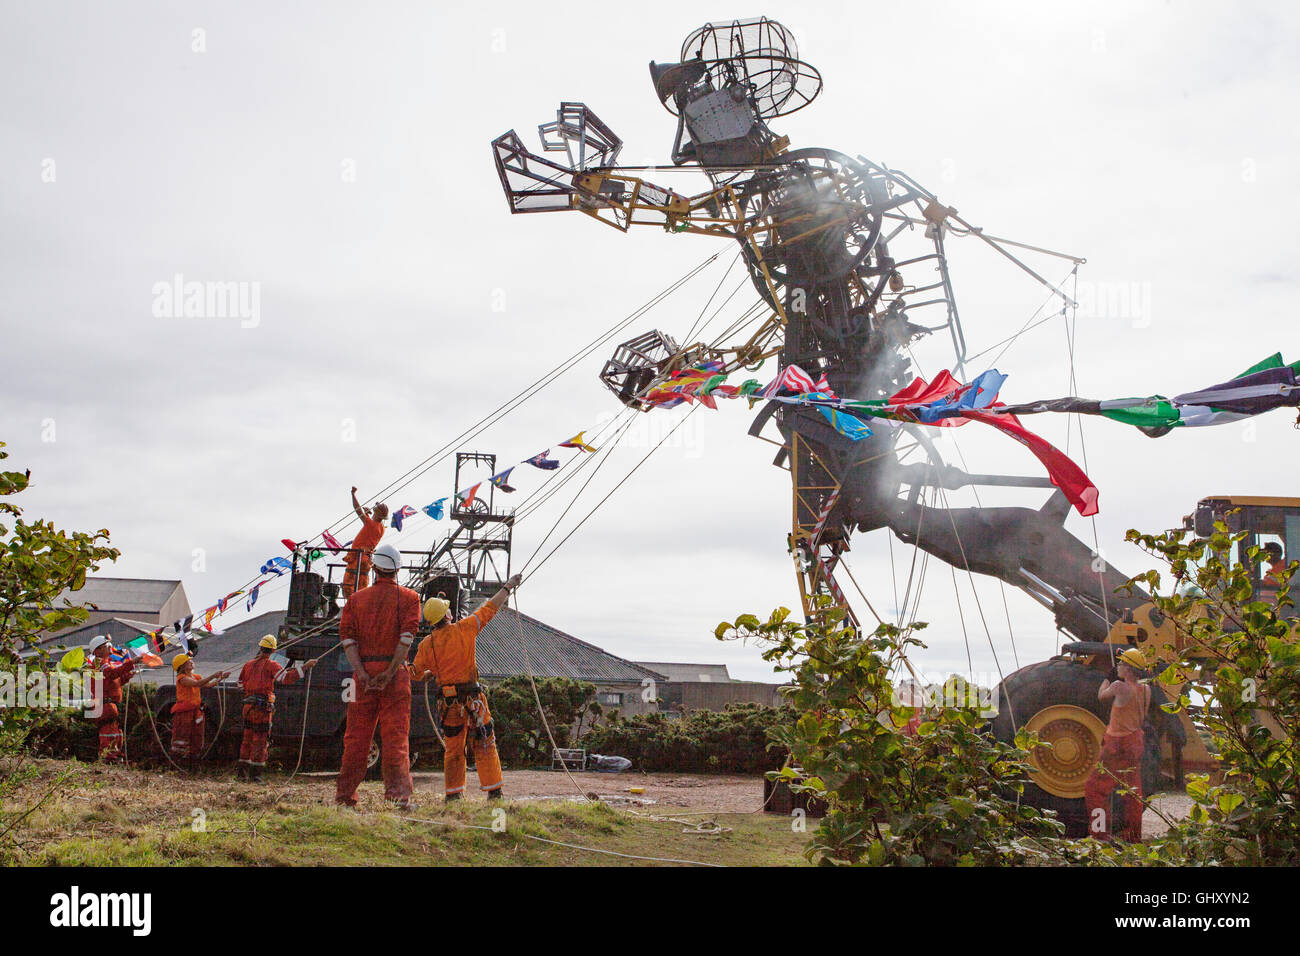 Höchste Marionette in der ganzen Welt besuche Geevor Tin Mine in COrnwall, Großbritannien Stockfoto